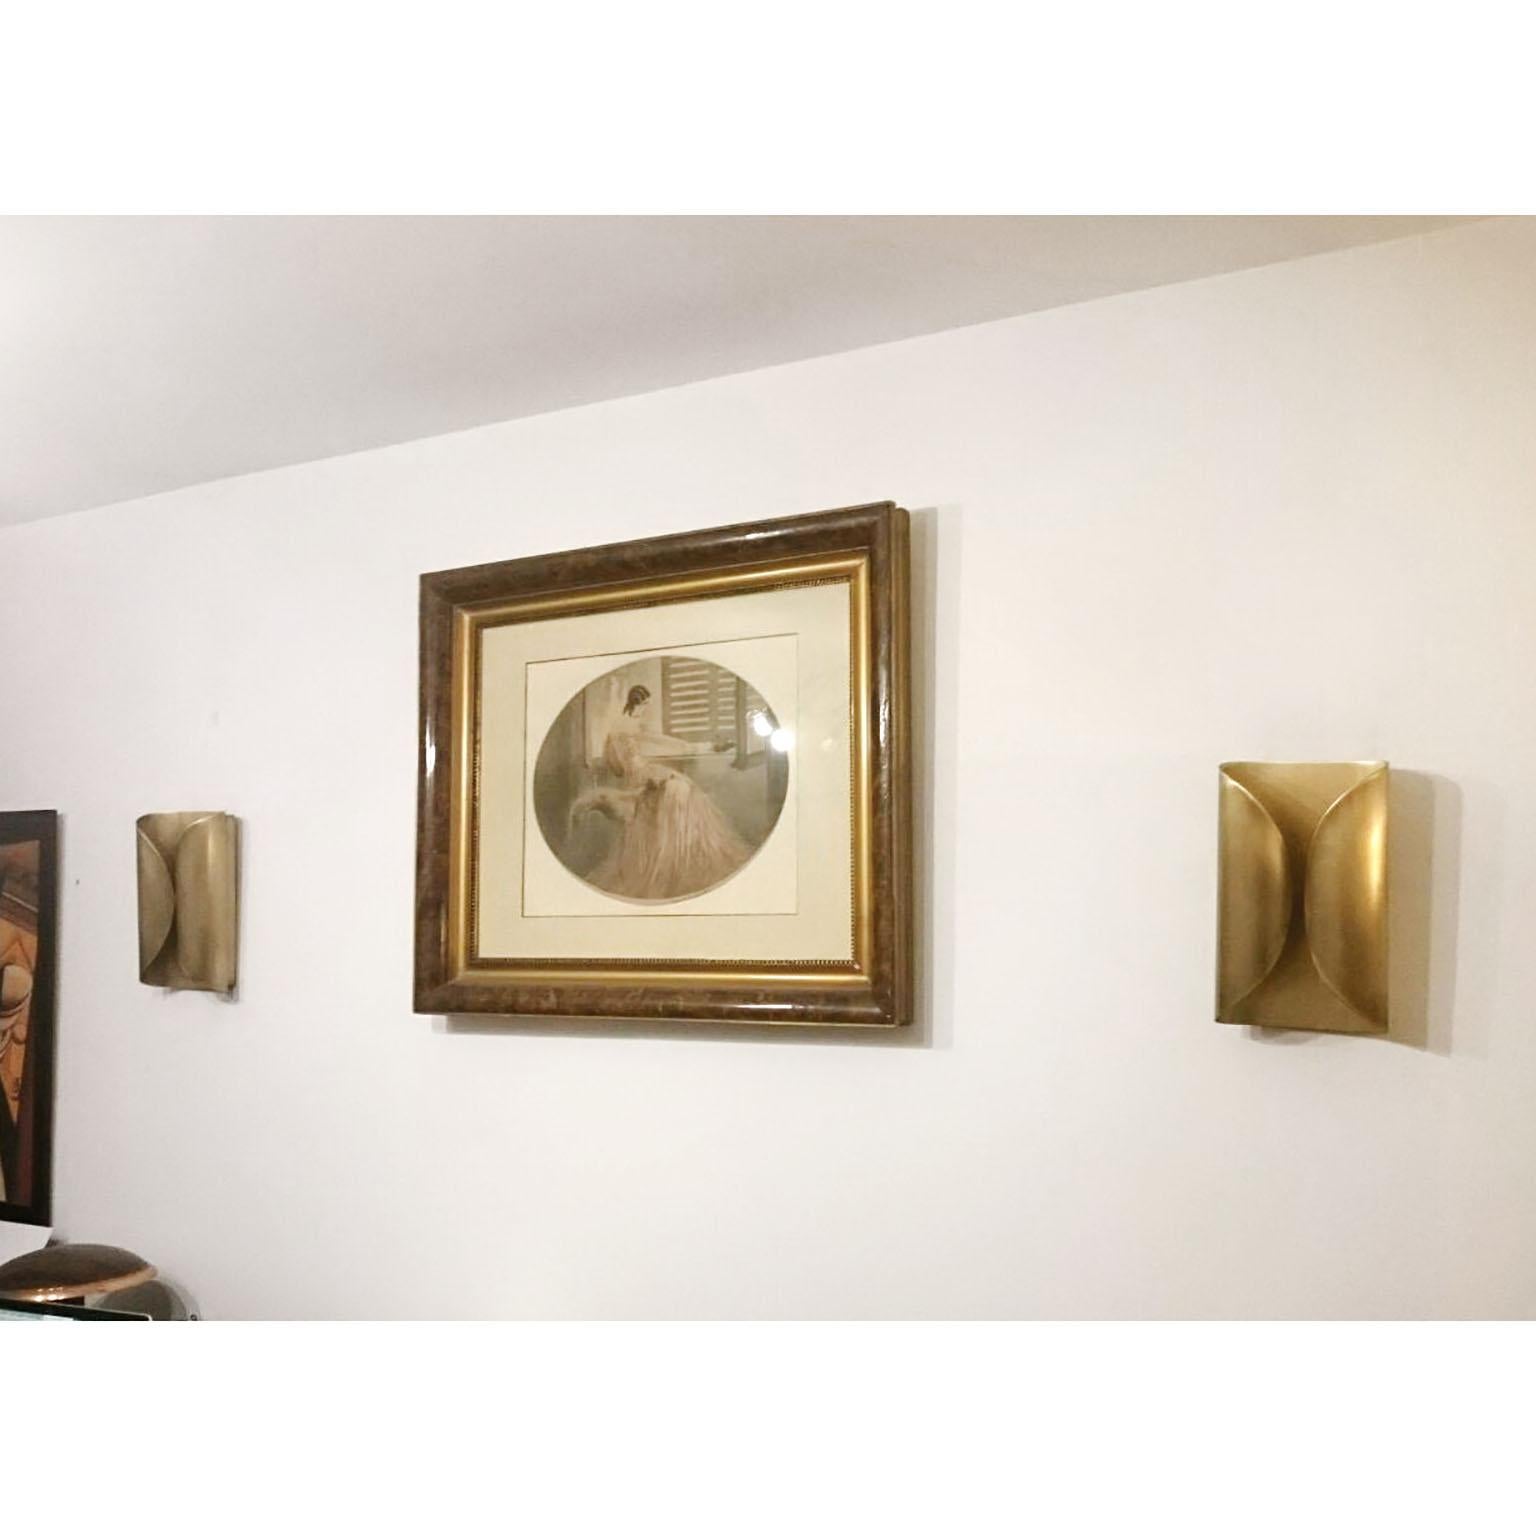 Ein elegantes Paar italienischer Wandleuchten im Mid-Century-Stil aus Messing. 2xG9 Licht in jeder Leuchte.
Abmessungen:
21.5 x 35 x 10 cm (8.5 x 13.8 x 4 in.)